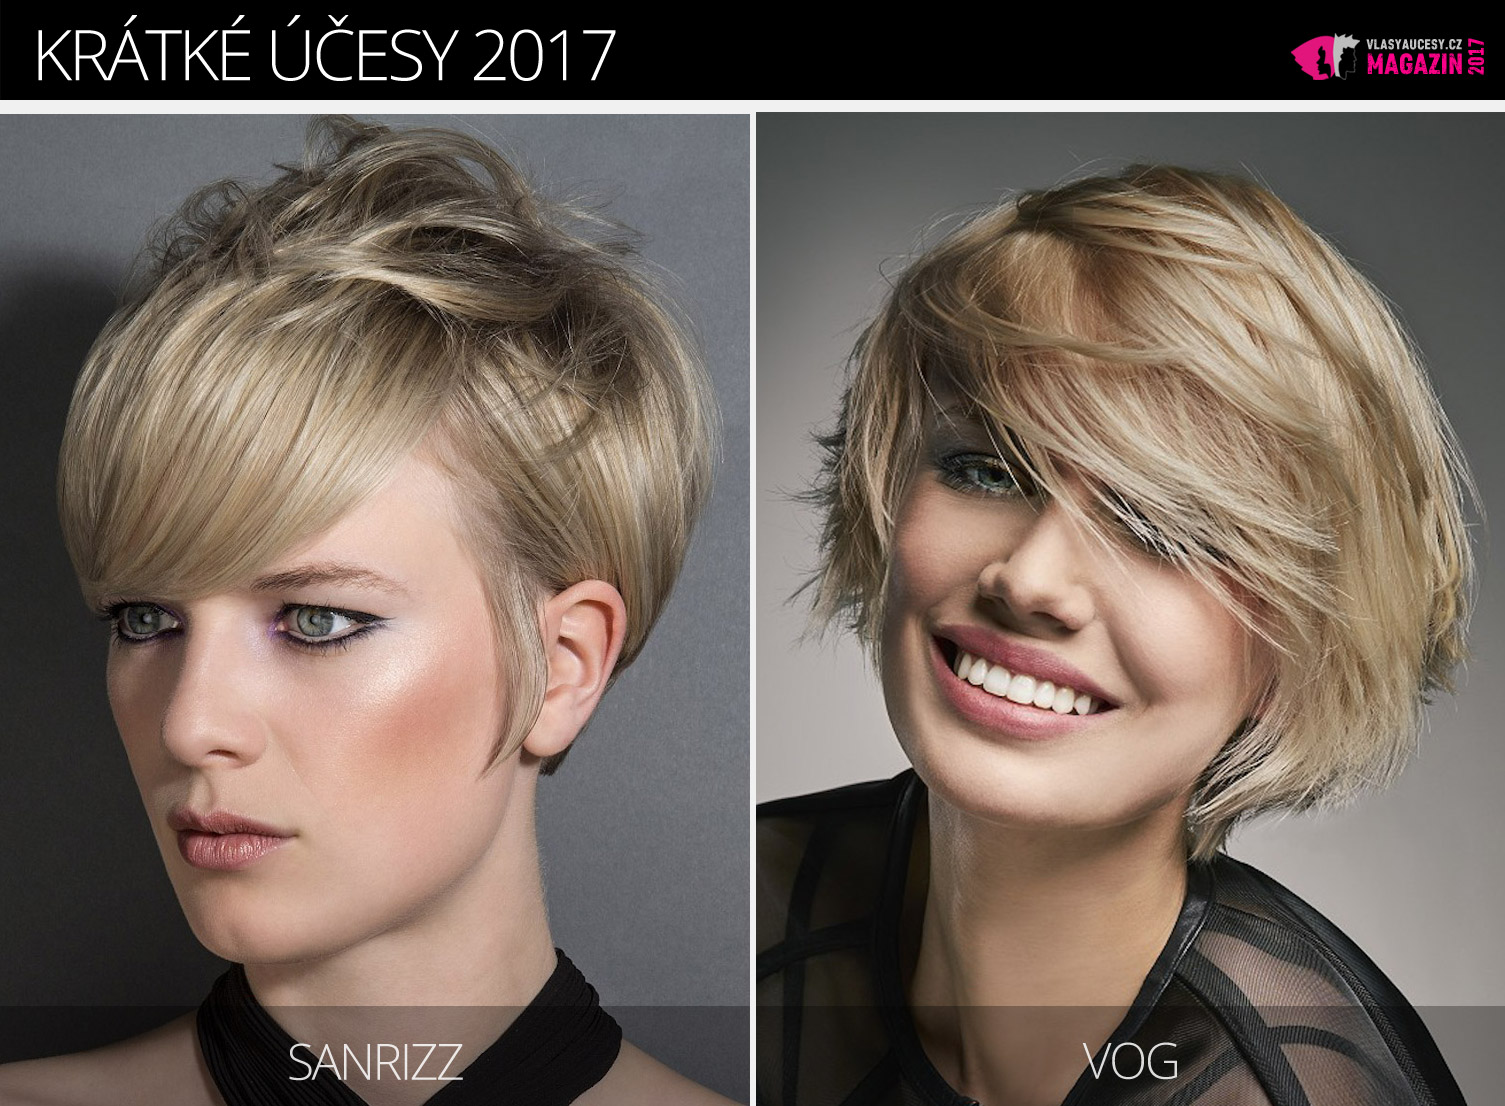 Tipy redakce magazínu Vlasy a účesy na trendy krátké účesy zima 2017. Účesy pro krátké vlasy 2017 jsou z kolekcí Sanrizz a VOG.